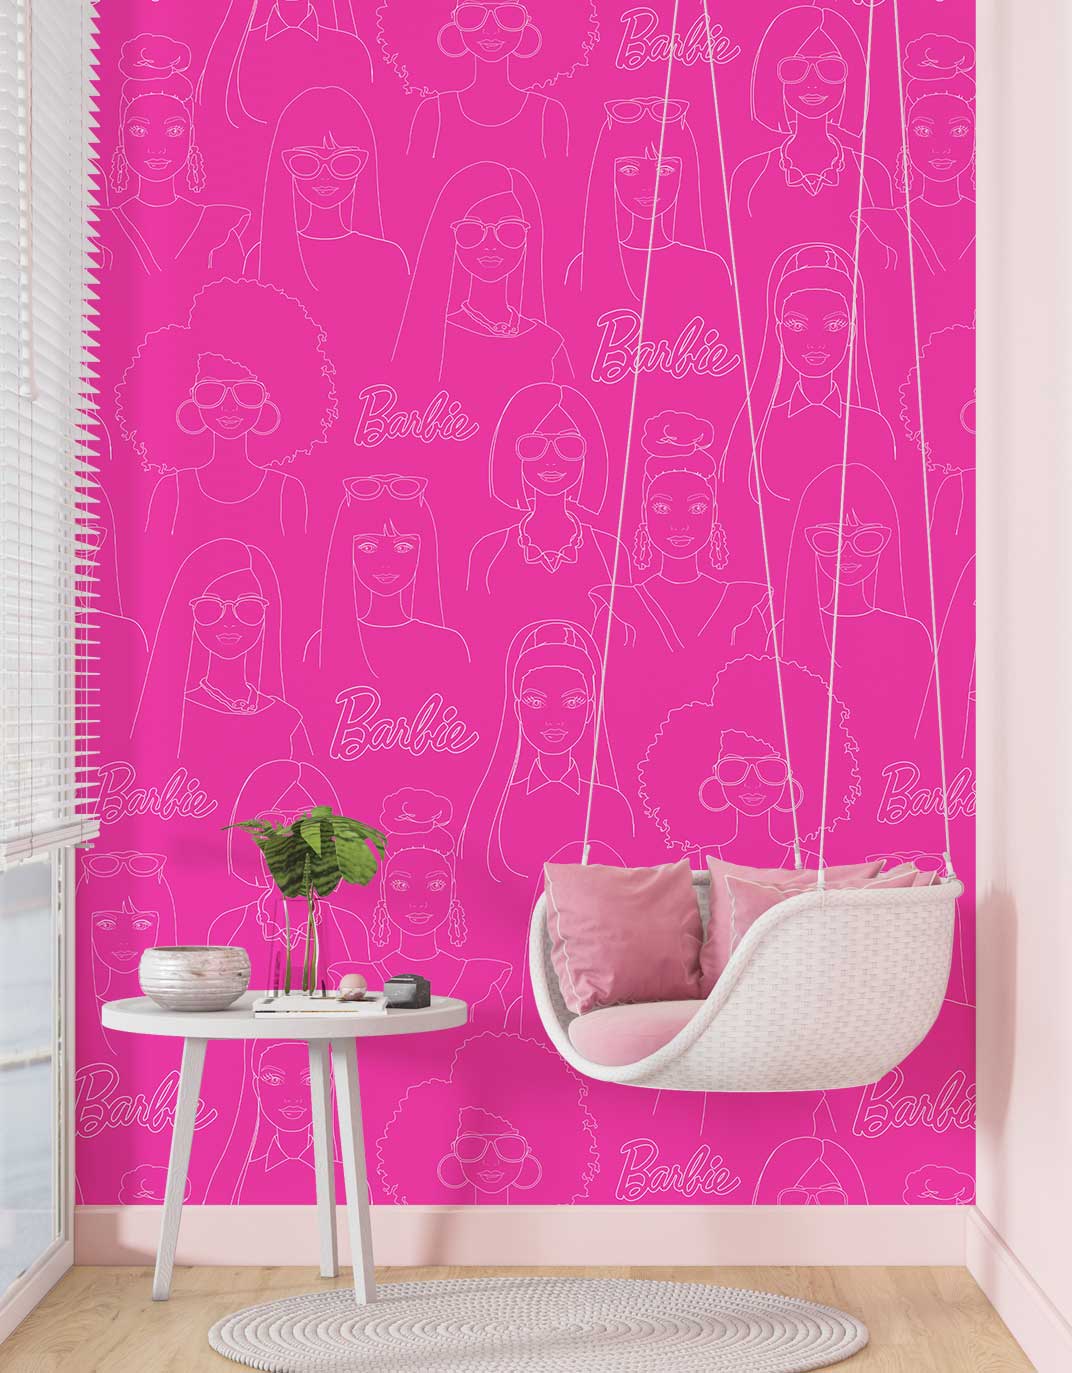 Barbie Line Drawing Wallpaper Mural